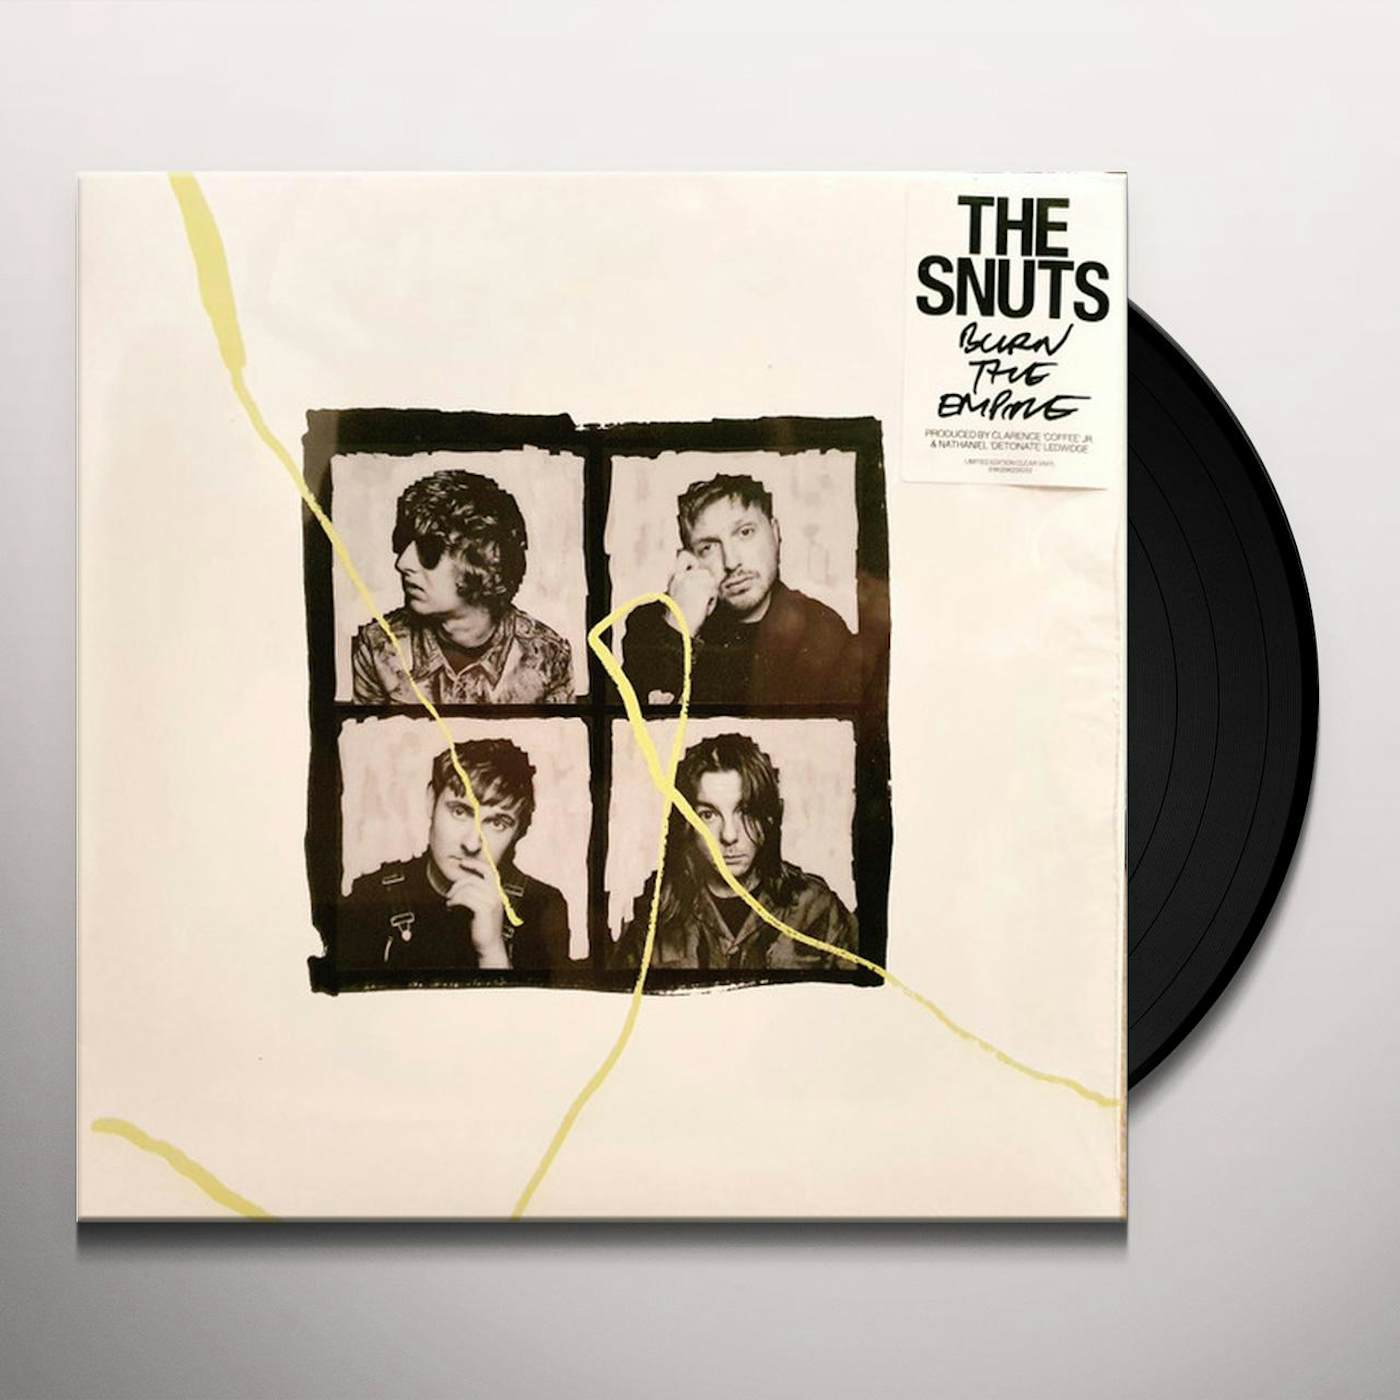 The Snuts Burn The Empire Vinyl Record